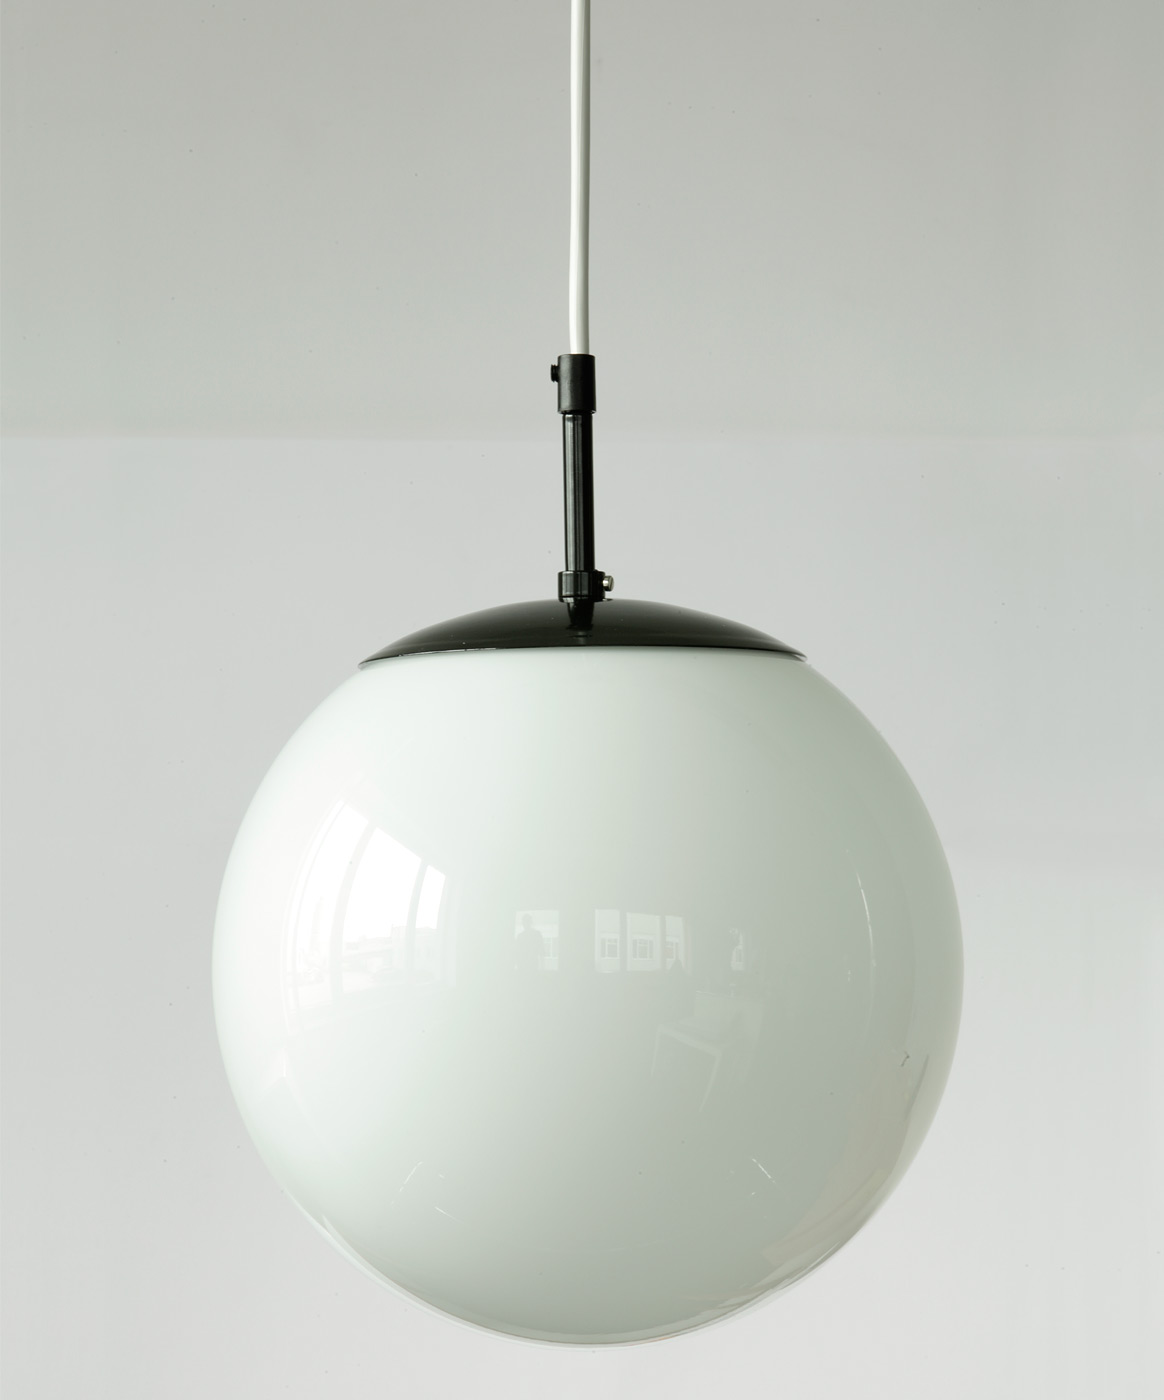 Minimalistische Kugel-Lampe MÜNCHEN: Kugel-Pendellampe (klein, Ø 25 cm), tiefschwarz, mit weißer Kabel-Aufhängung